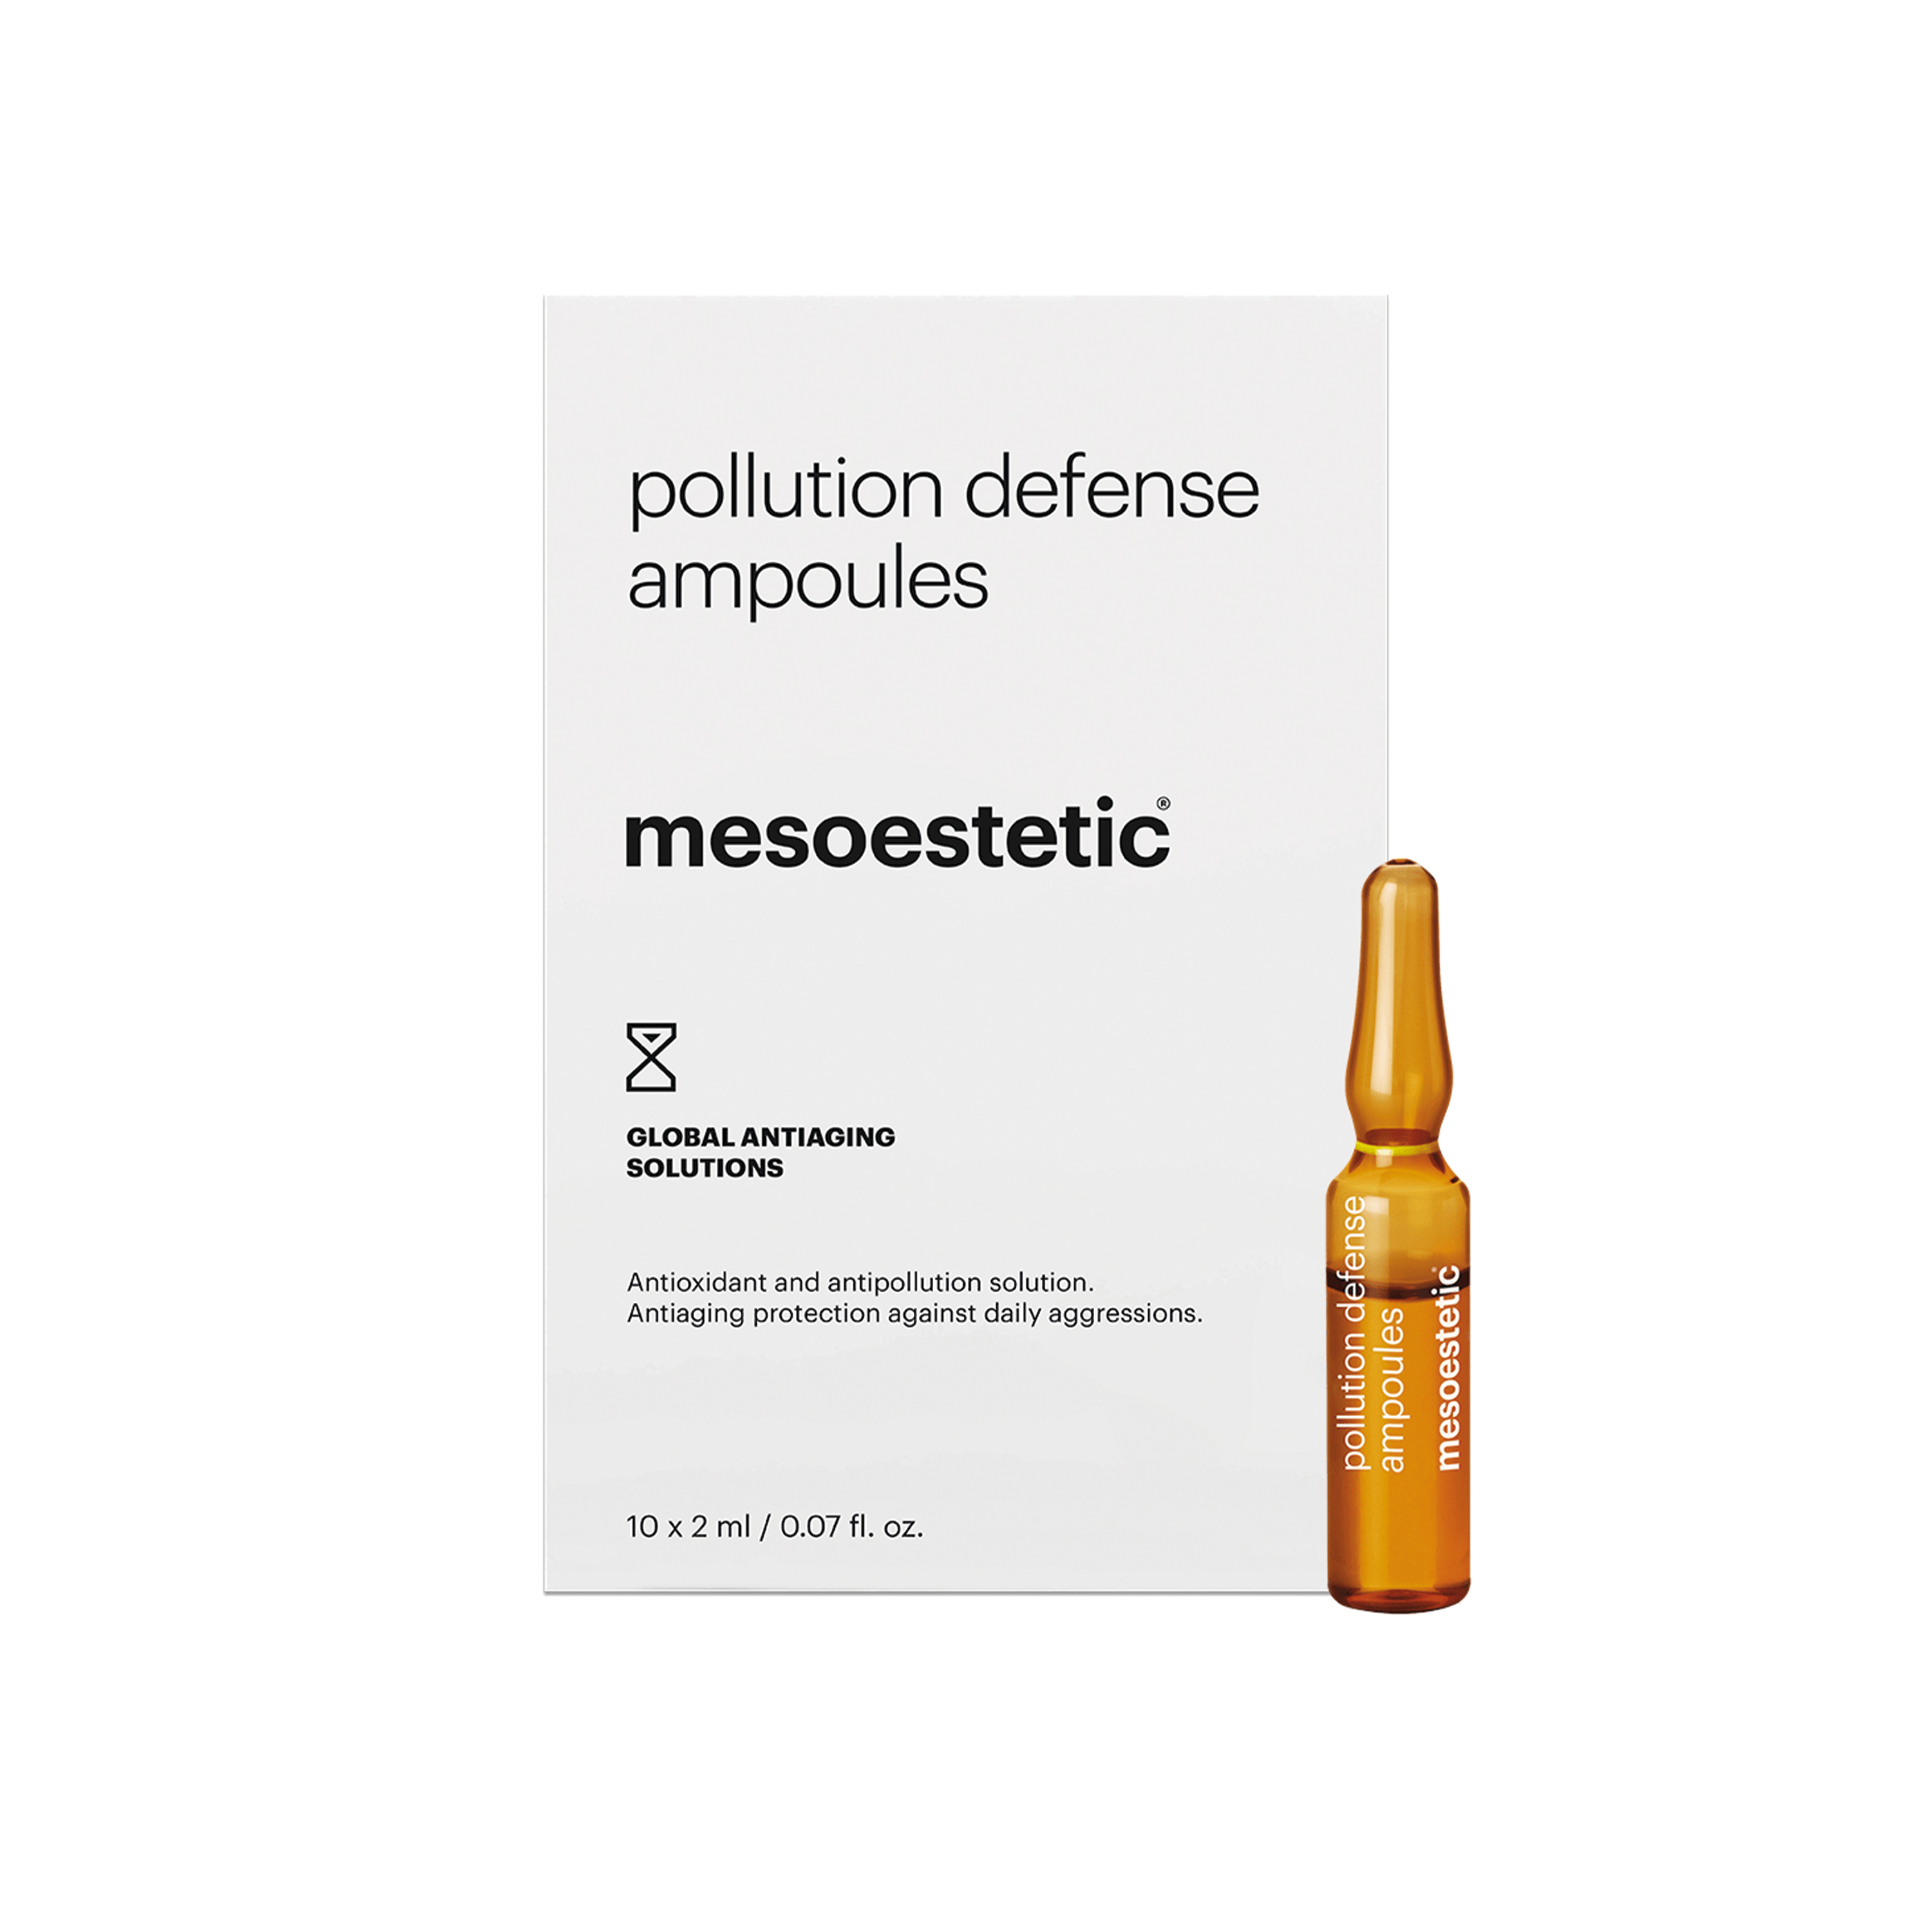 Billede af Mesoestetic Pollution Defense Ampoules - Antiage ampuller med antioxidant til forebyggelse af tegn på aldring - 10 x 2 ml. - Banebrydende beskyttelse